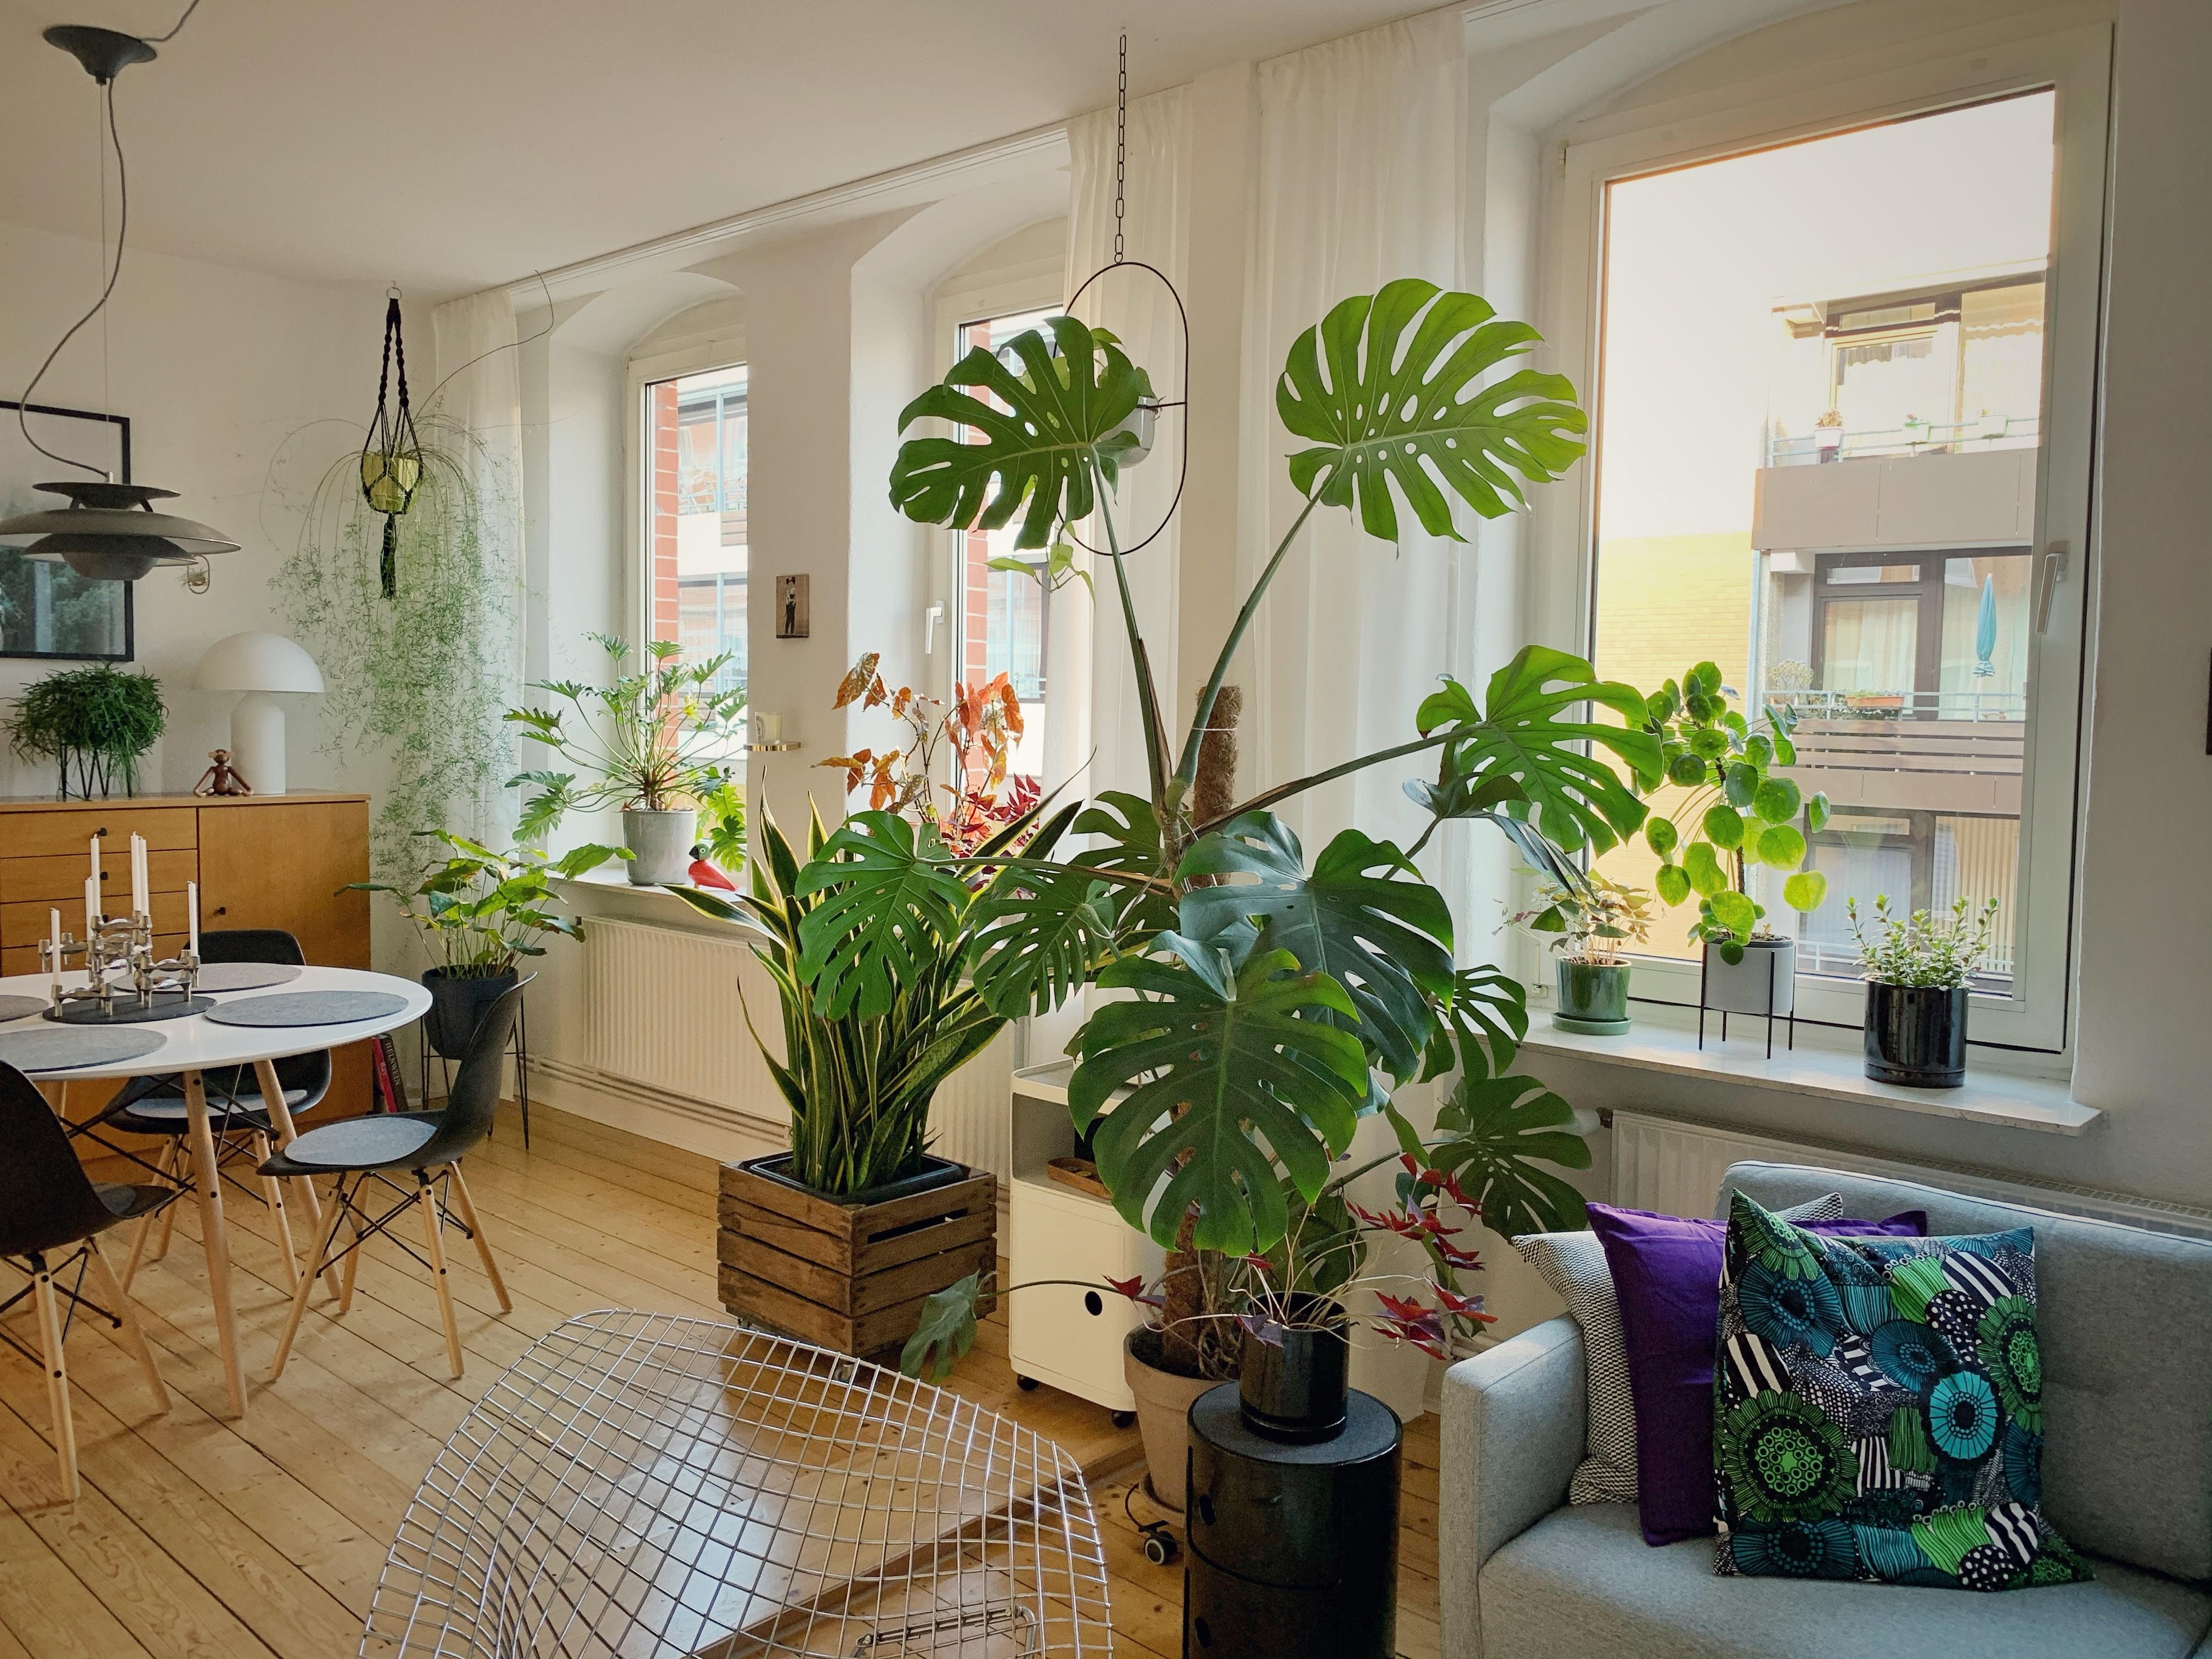 Zuhause...Am besten mit viel Grün in der Wohnung. Ich liebe es grün... #livingchallenge #plantgang #couchstyle